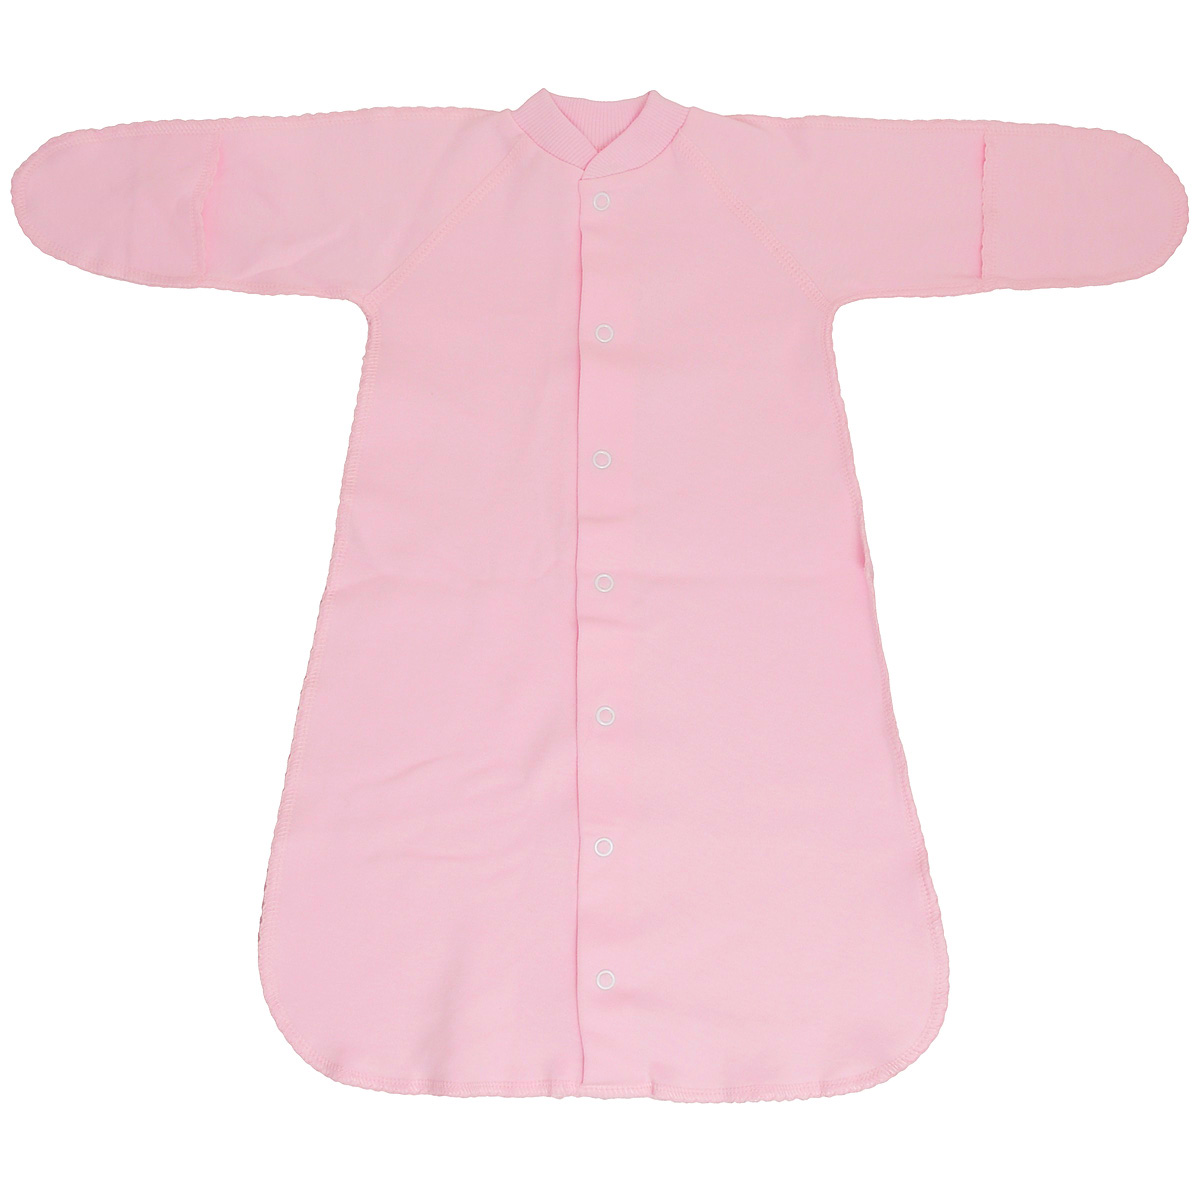 Спальный мешок унисекс Фреш стайл, цвет: розовый. 37-528. Размер 62